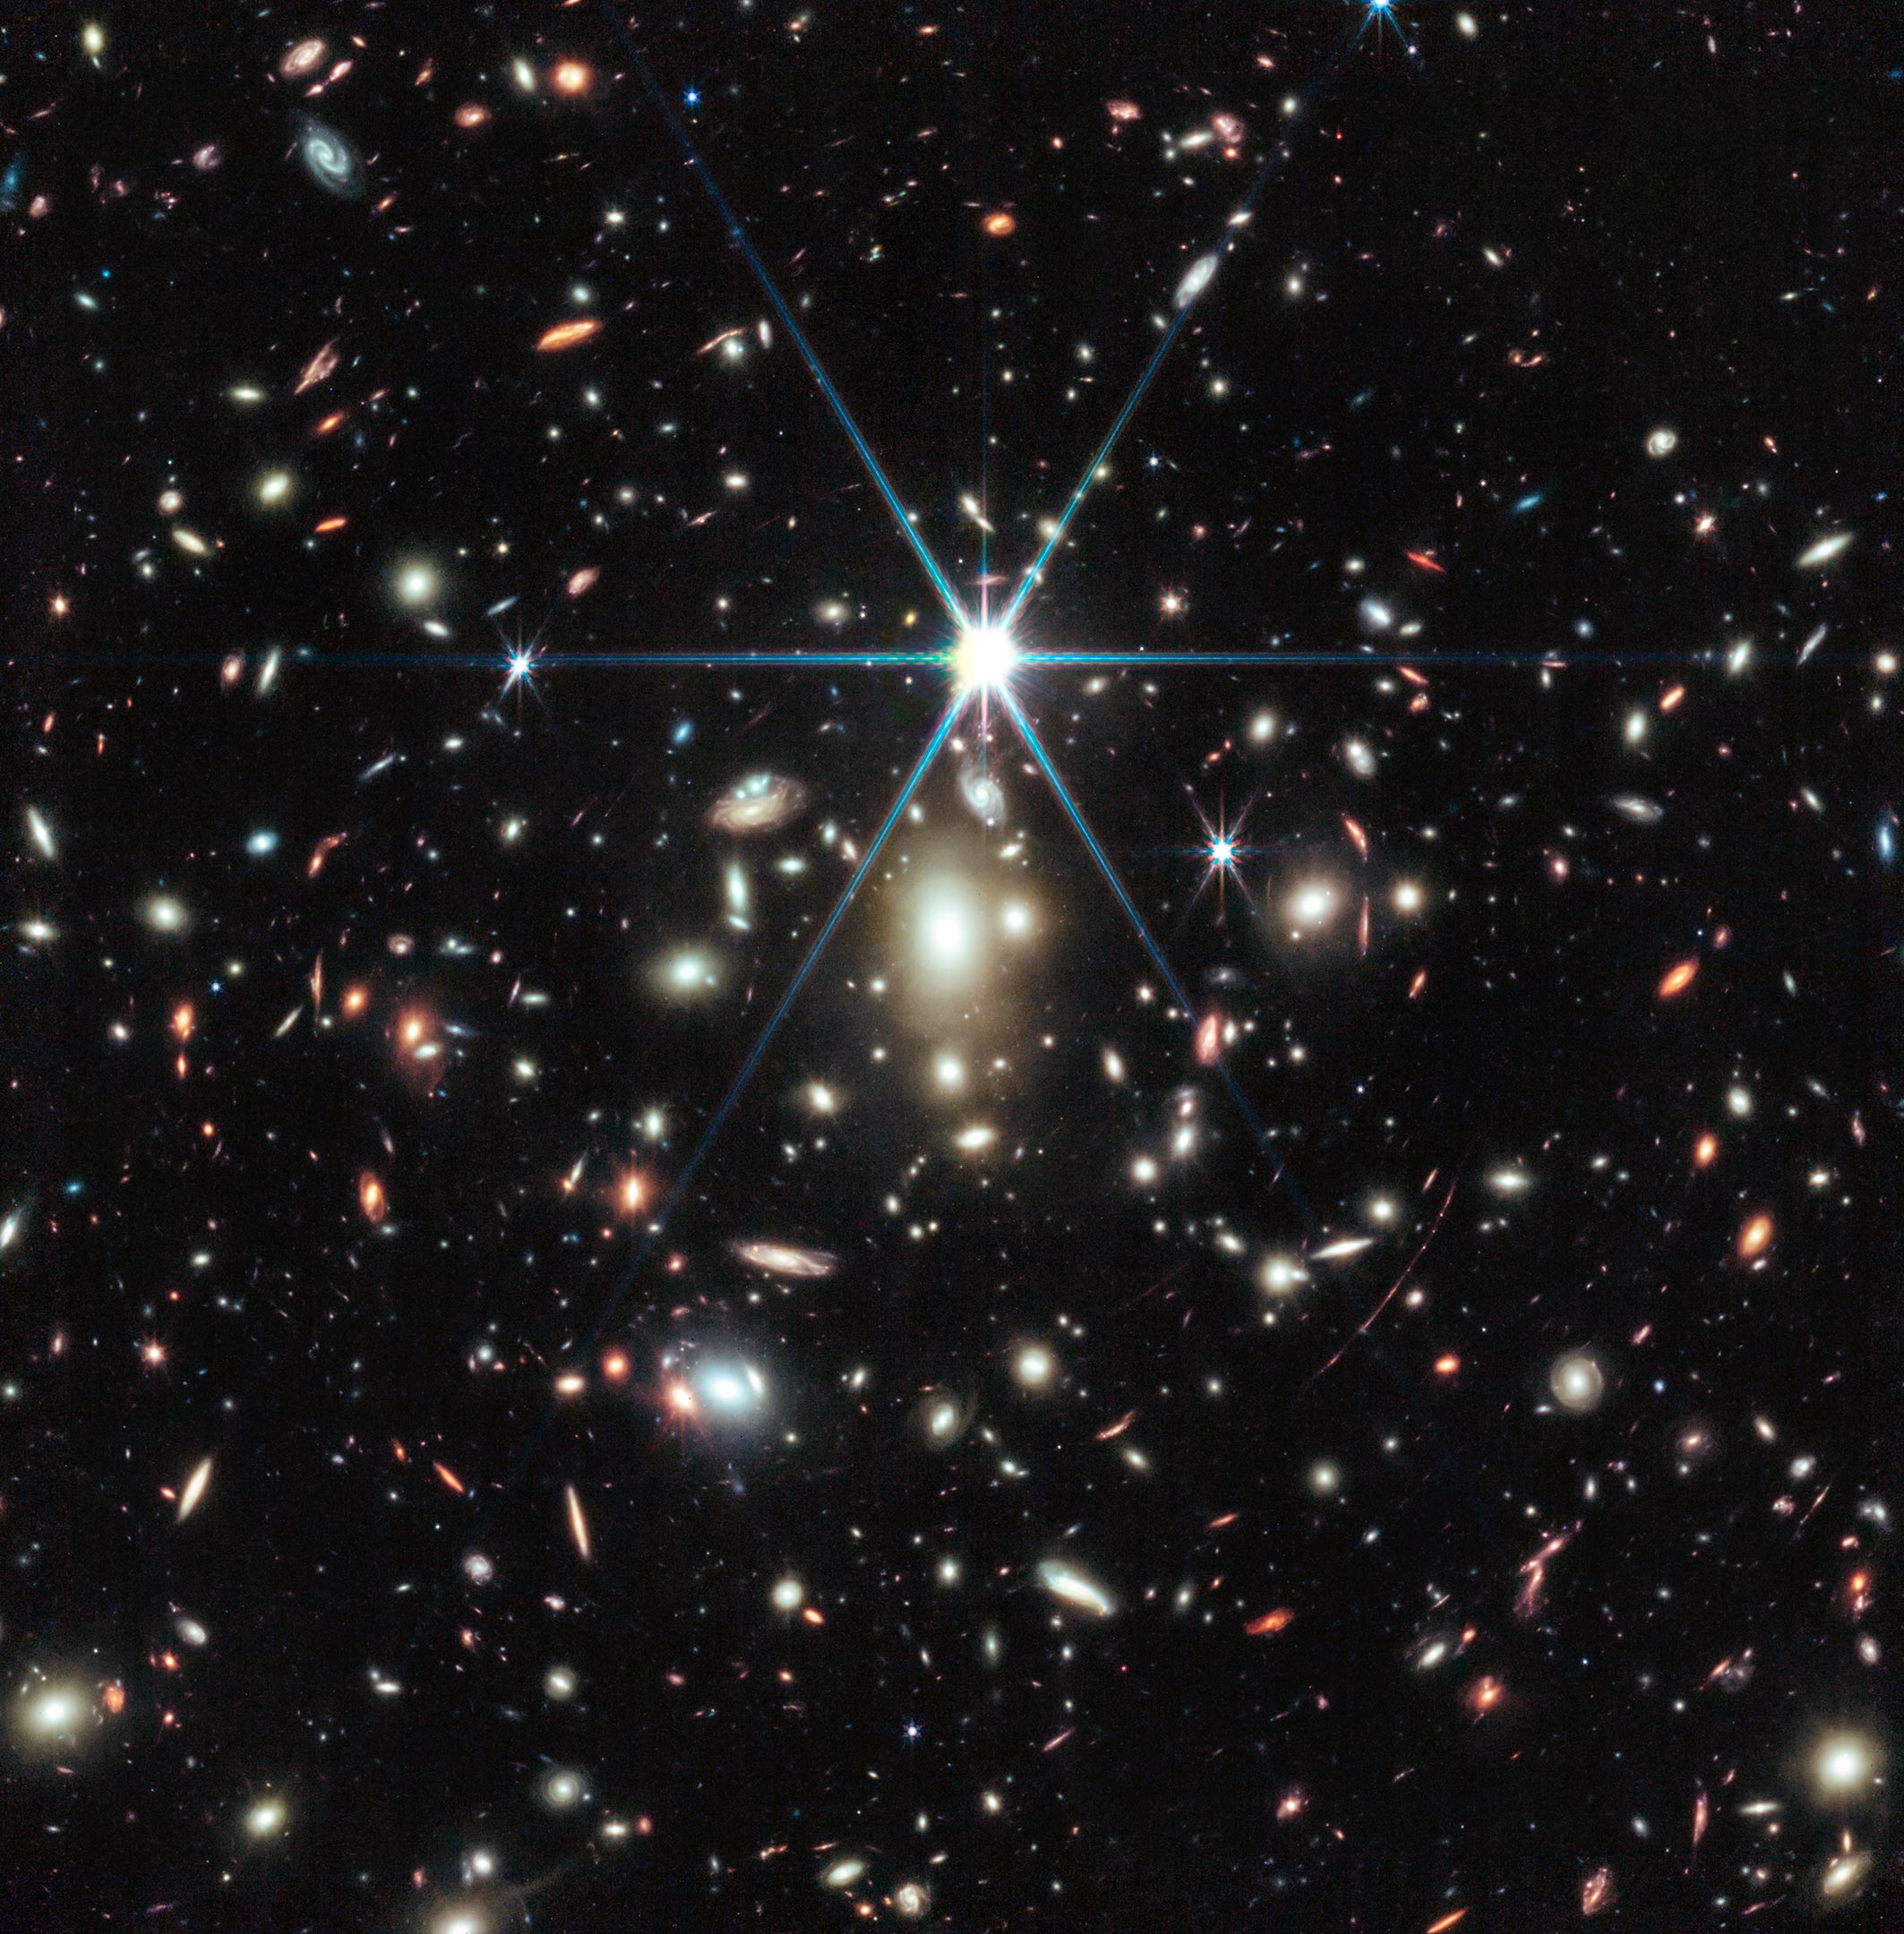 ウェッブは時空のしわを利用して、これまでに発見された最も遠い星であるエレンデルを明らかにすることができる